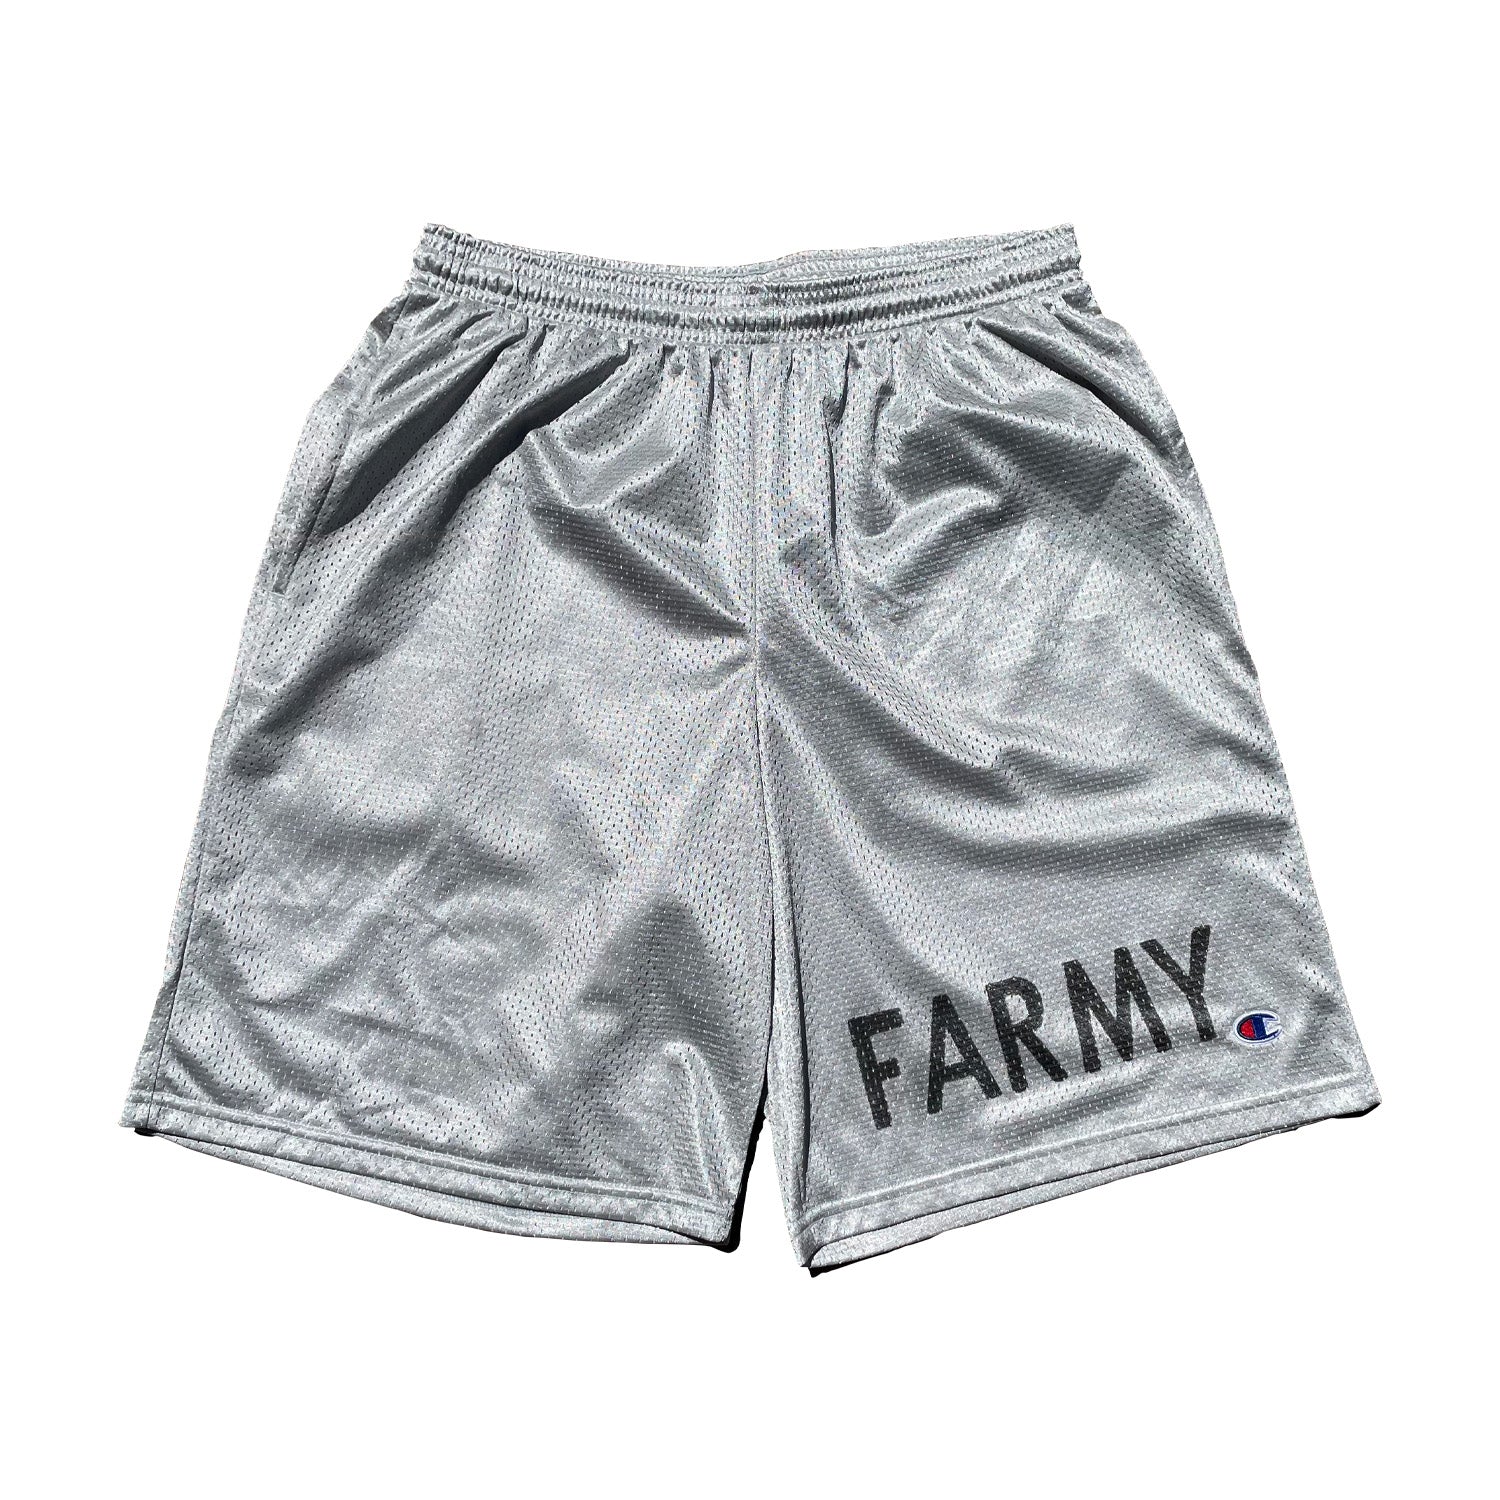 Farmy Shorts